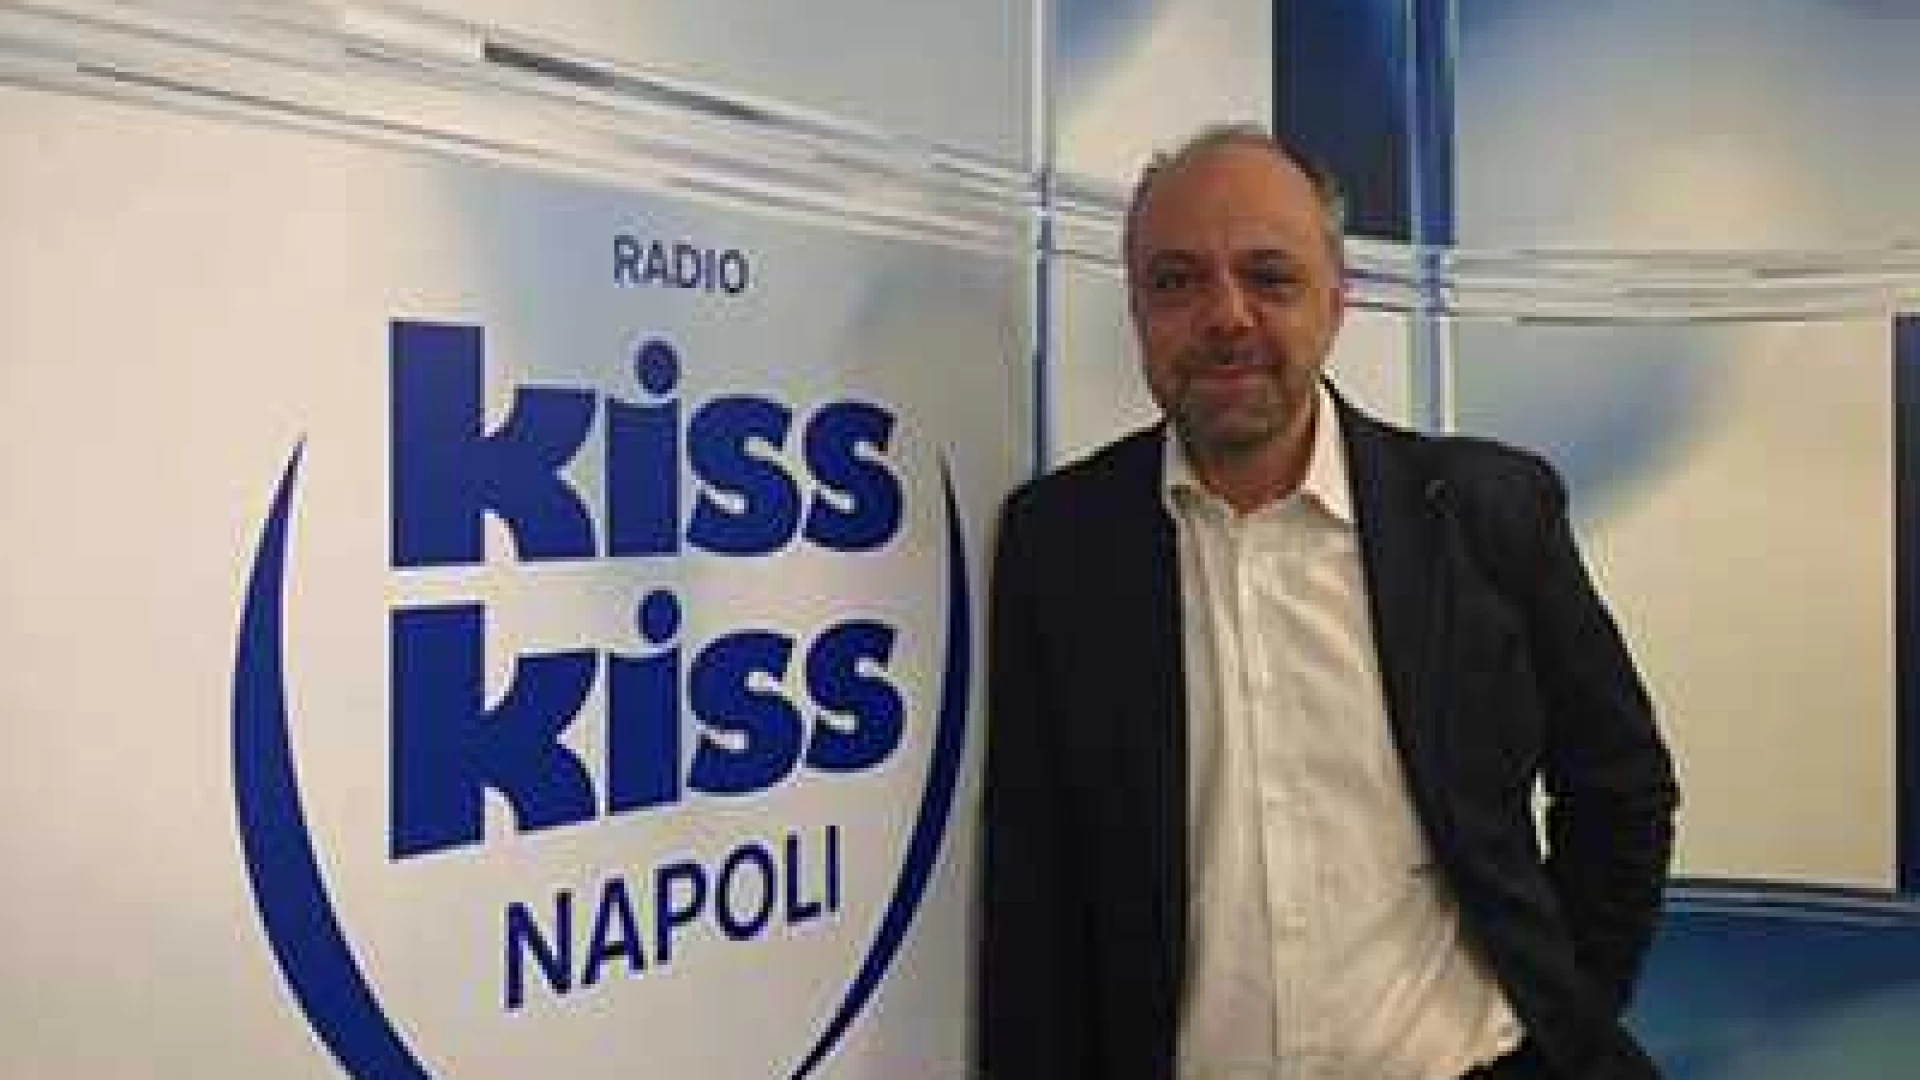 Radio Kiss Kiss risponde a De Laurentiis. Il comunicato della redazione